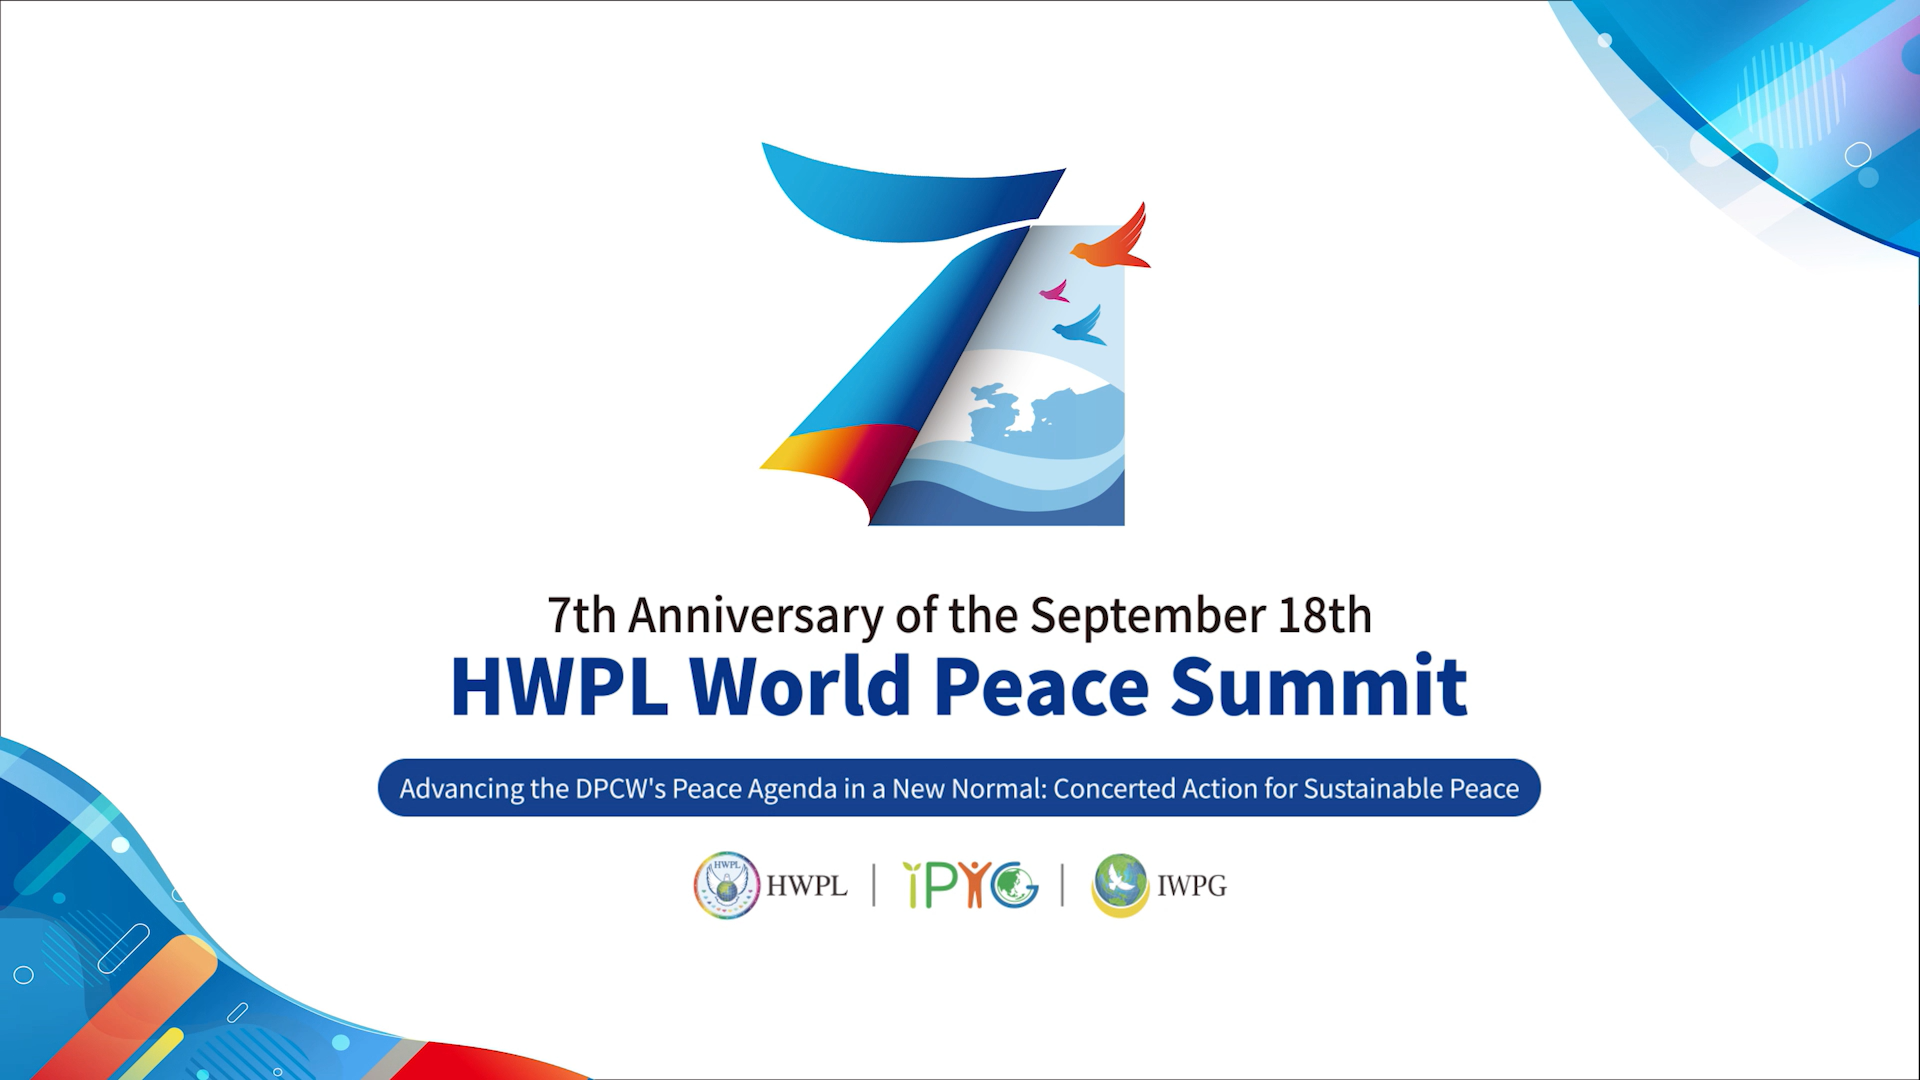 Deutsche-Politik-News.de | 7. Jahrestag des HWPL World Peace Summits mit 32.500: Teilnehmern Stärkung der DPCW-Friedensagenda in der Post-Covid Ära - Gemeinsames Handeln für dauerhaften Frieden